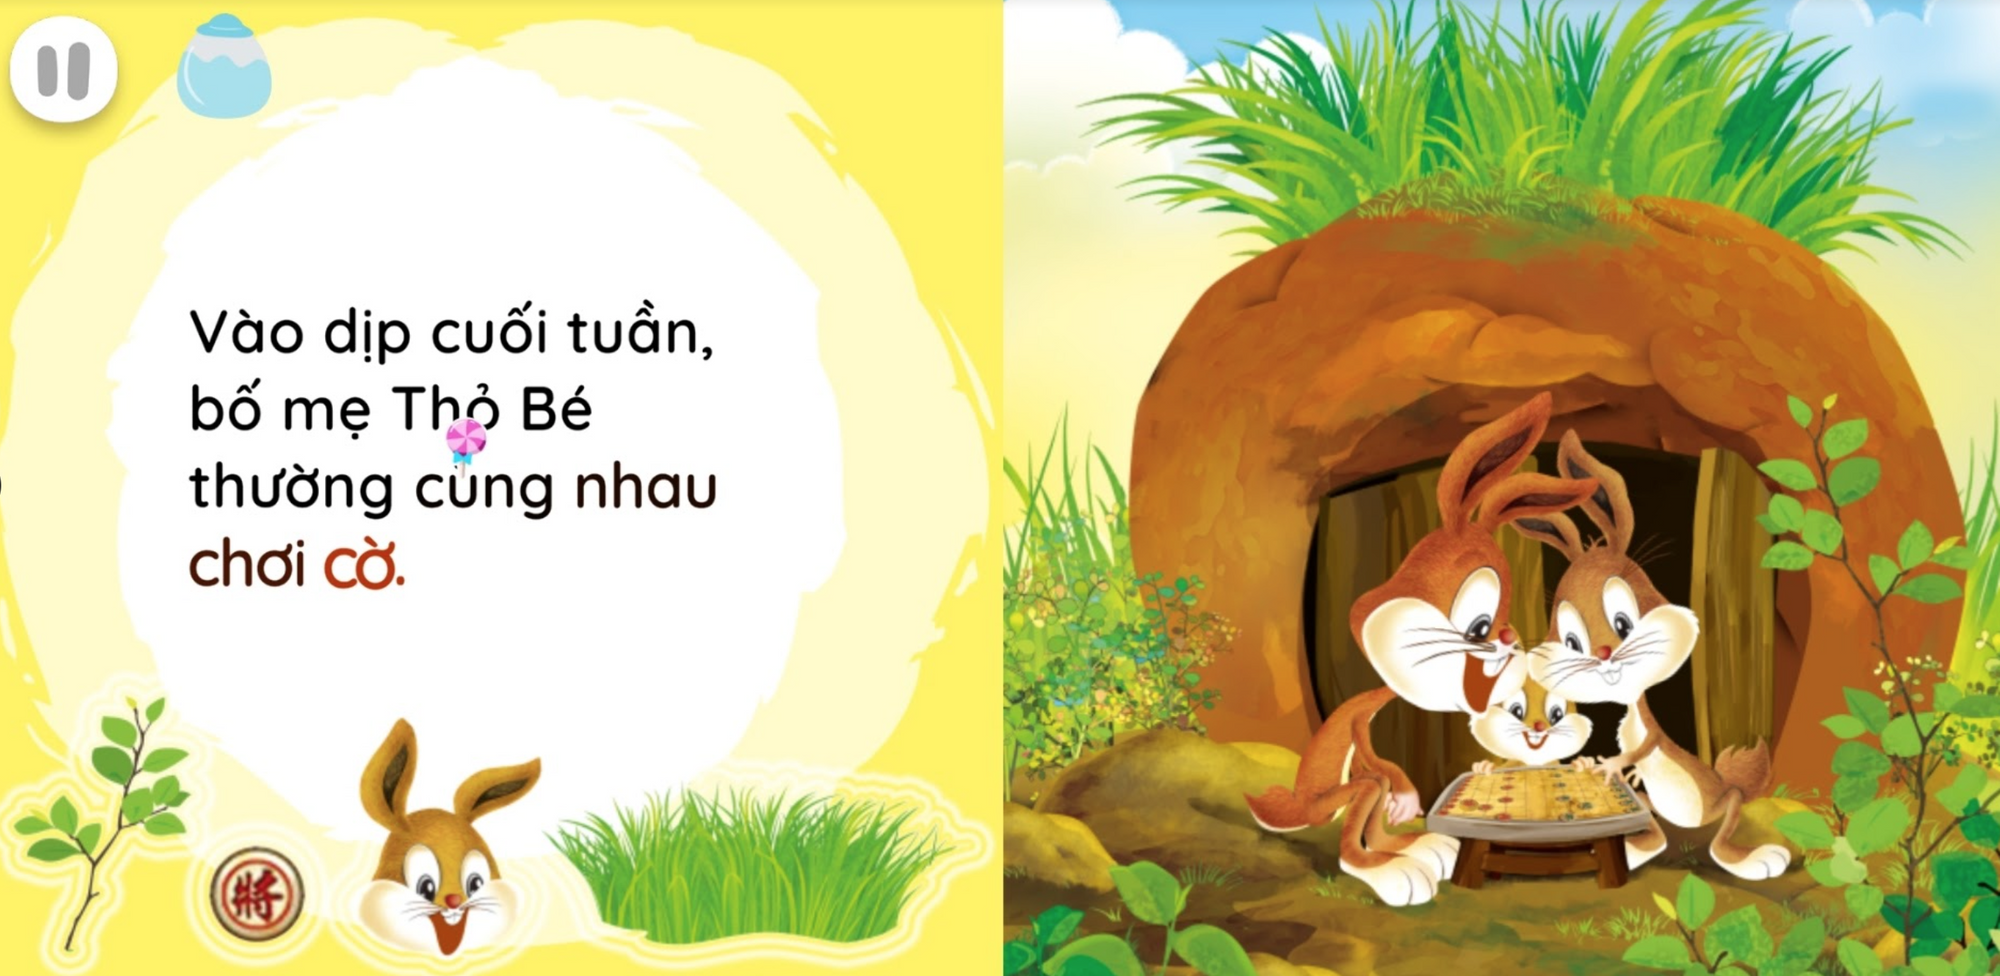 ICANKid sử dụng truyện nói giúp bé qua mùa tưu trường online dễ dàng làm quen tiếng Việt